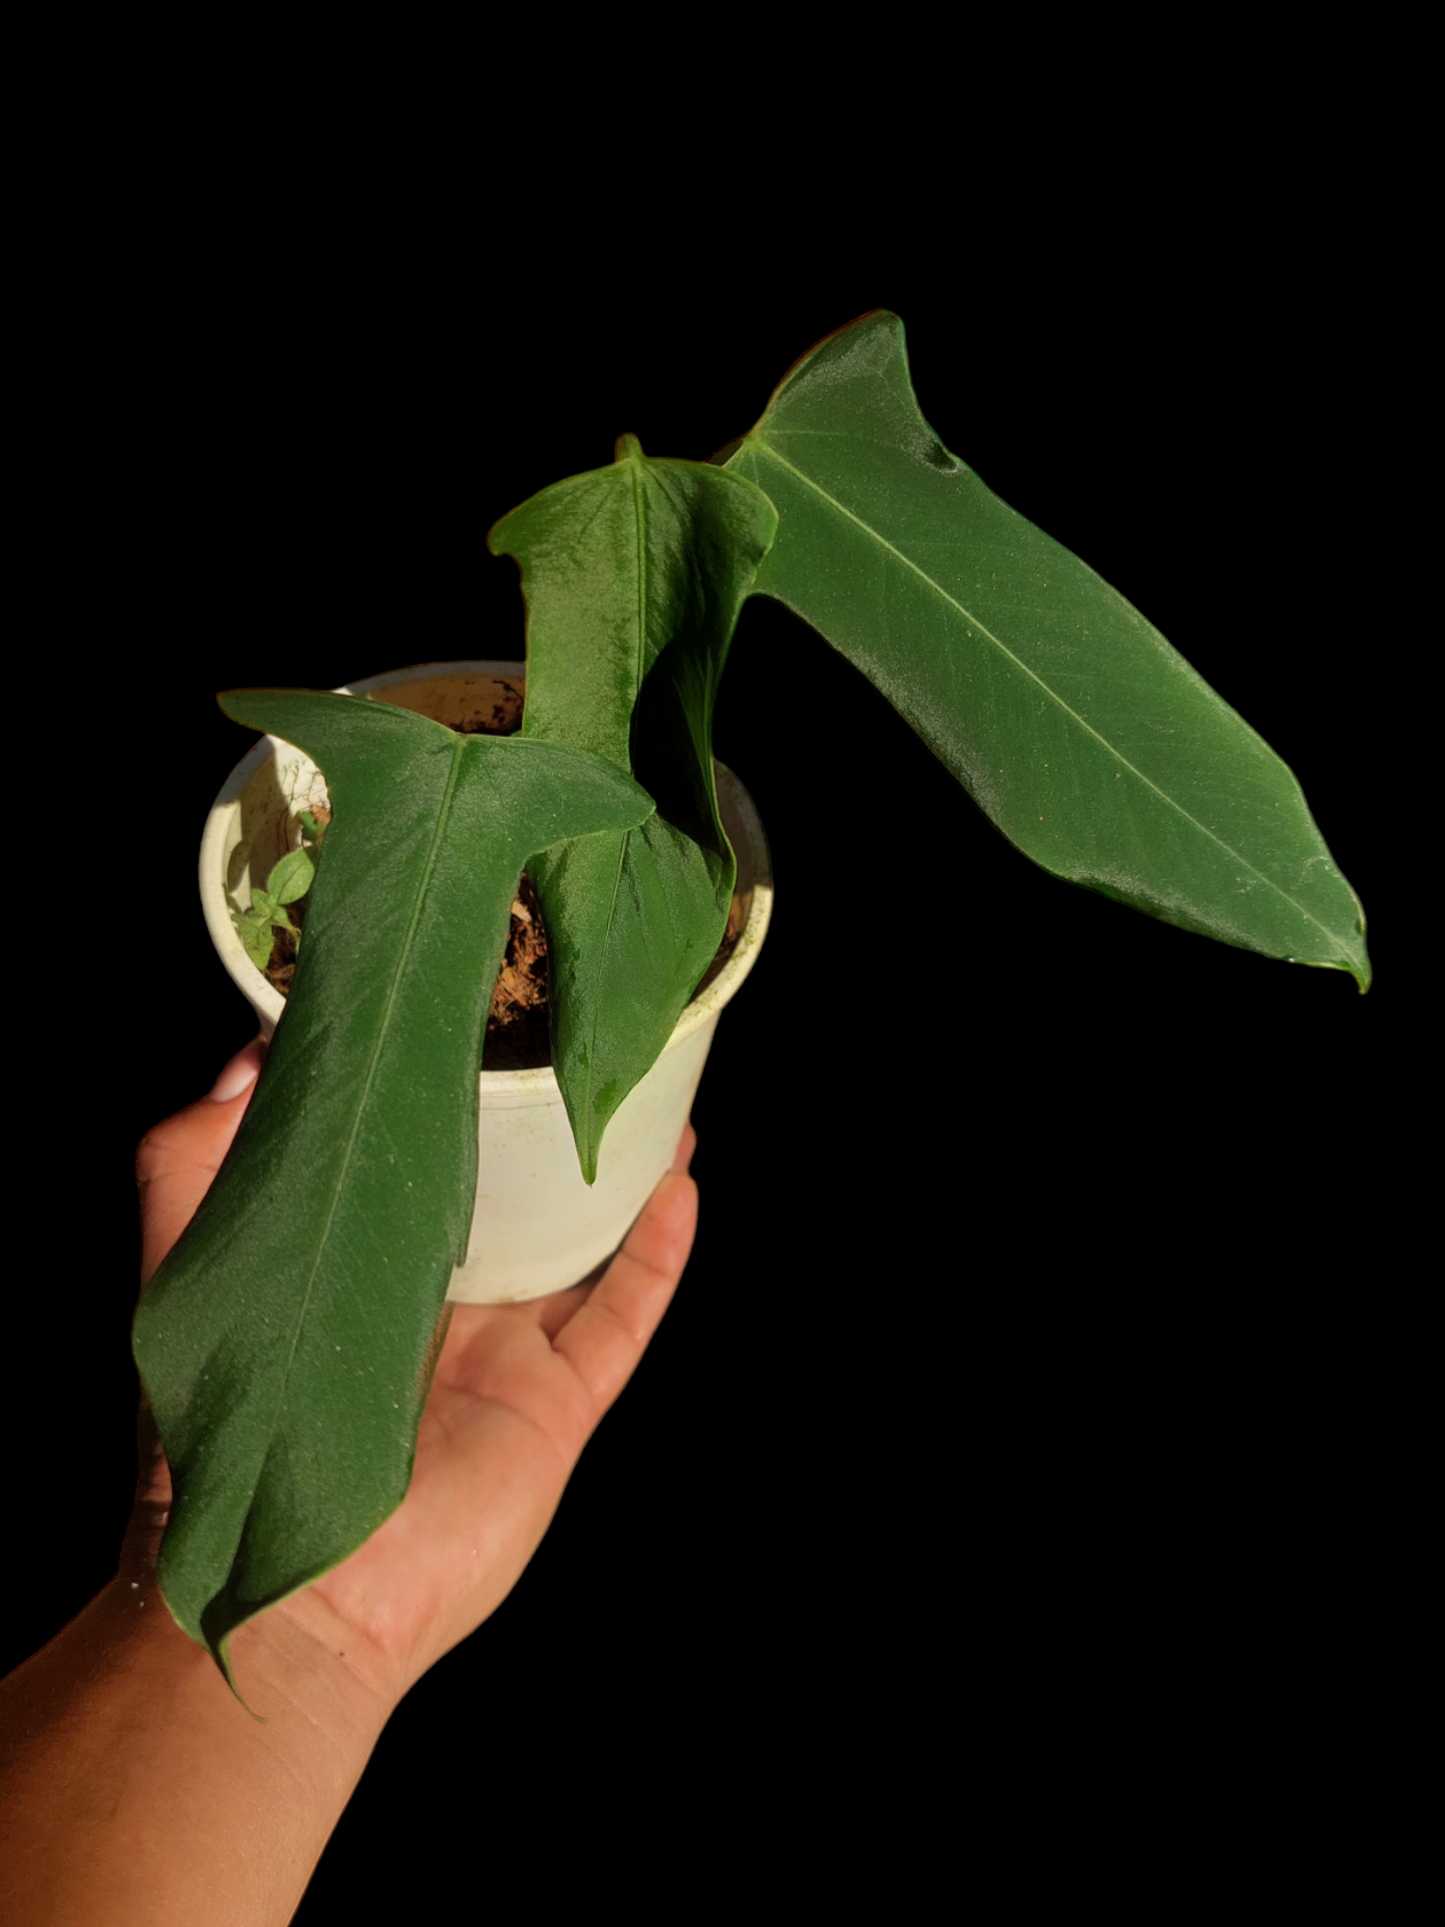 Anthurium Argyrostachyum "Velvety" (EXACT PLANT)